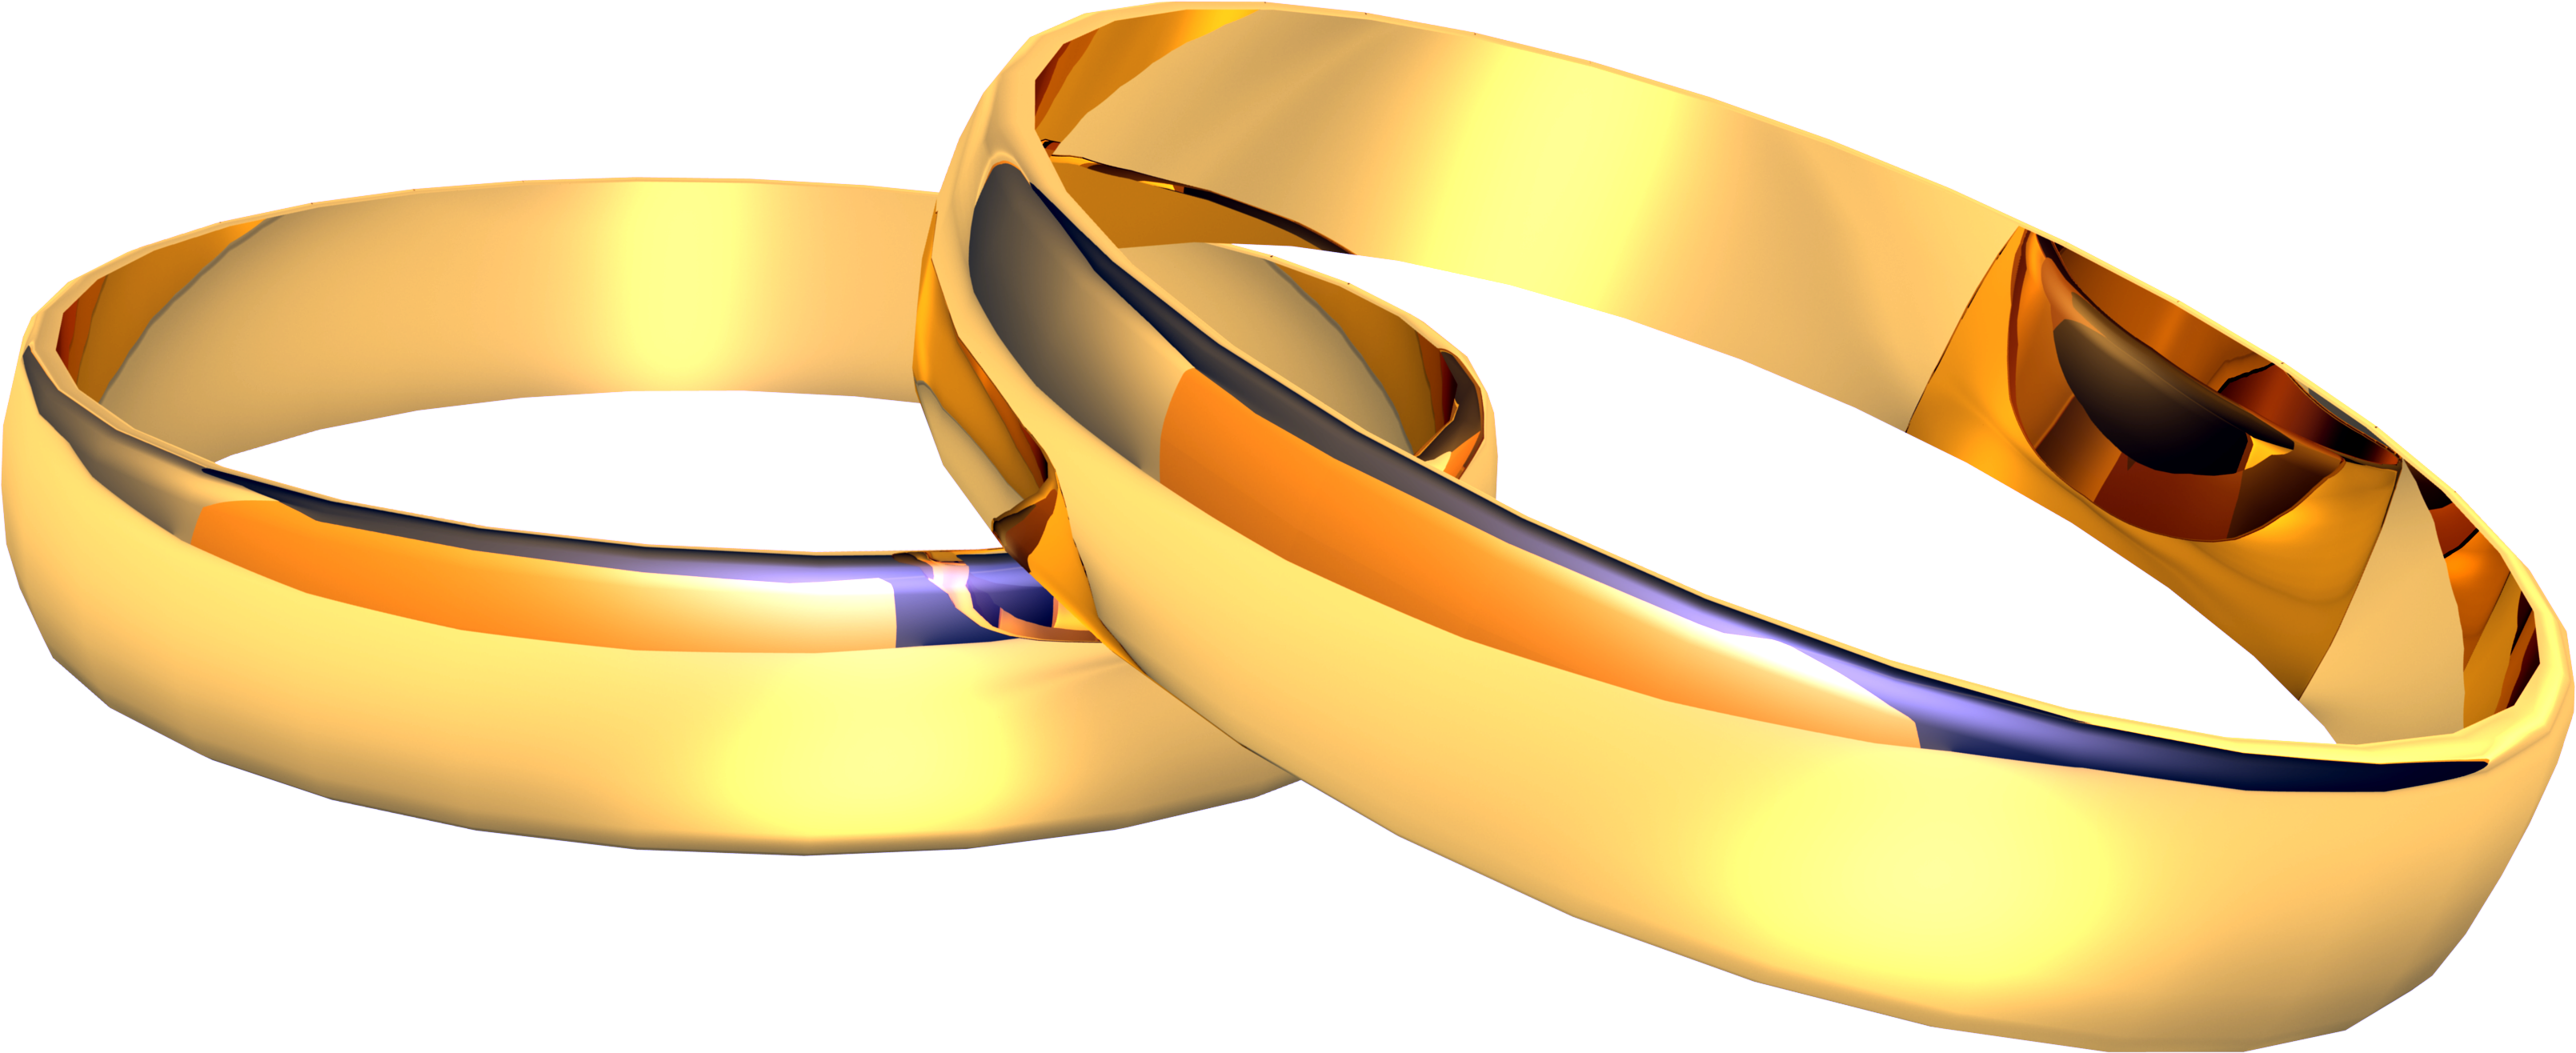 शादी की सोने की अंगूठी